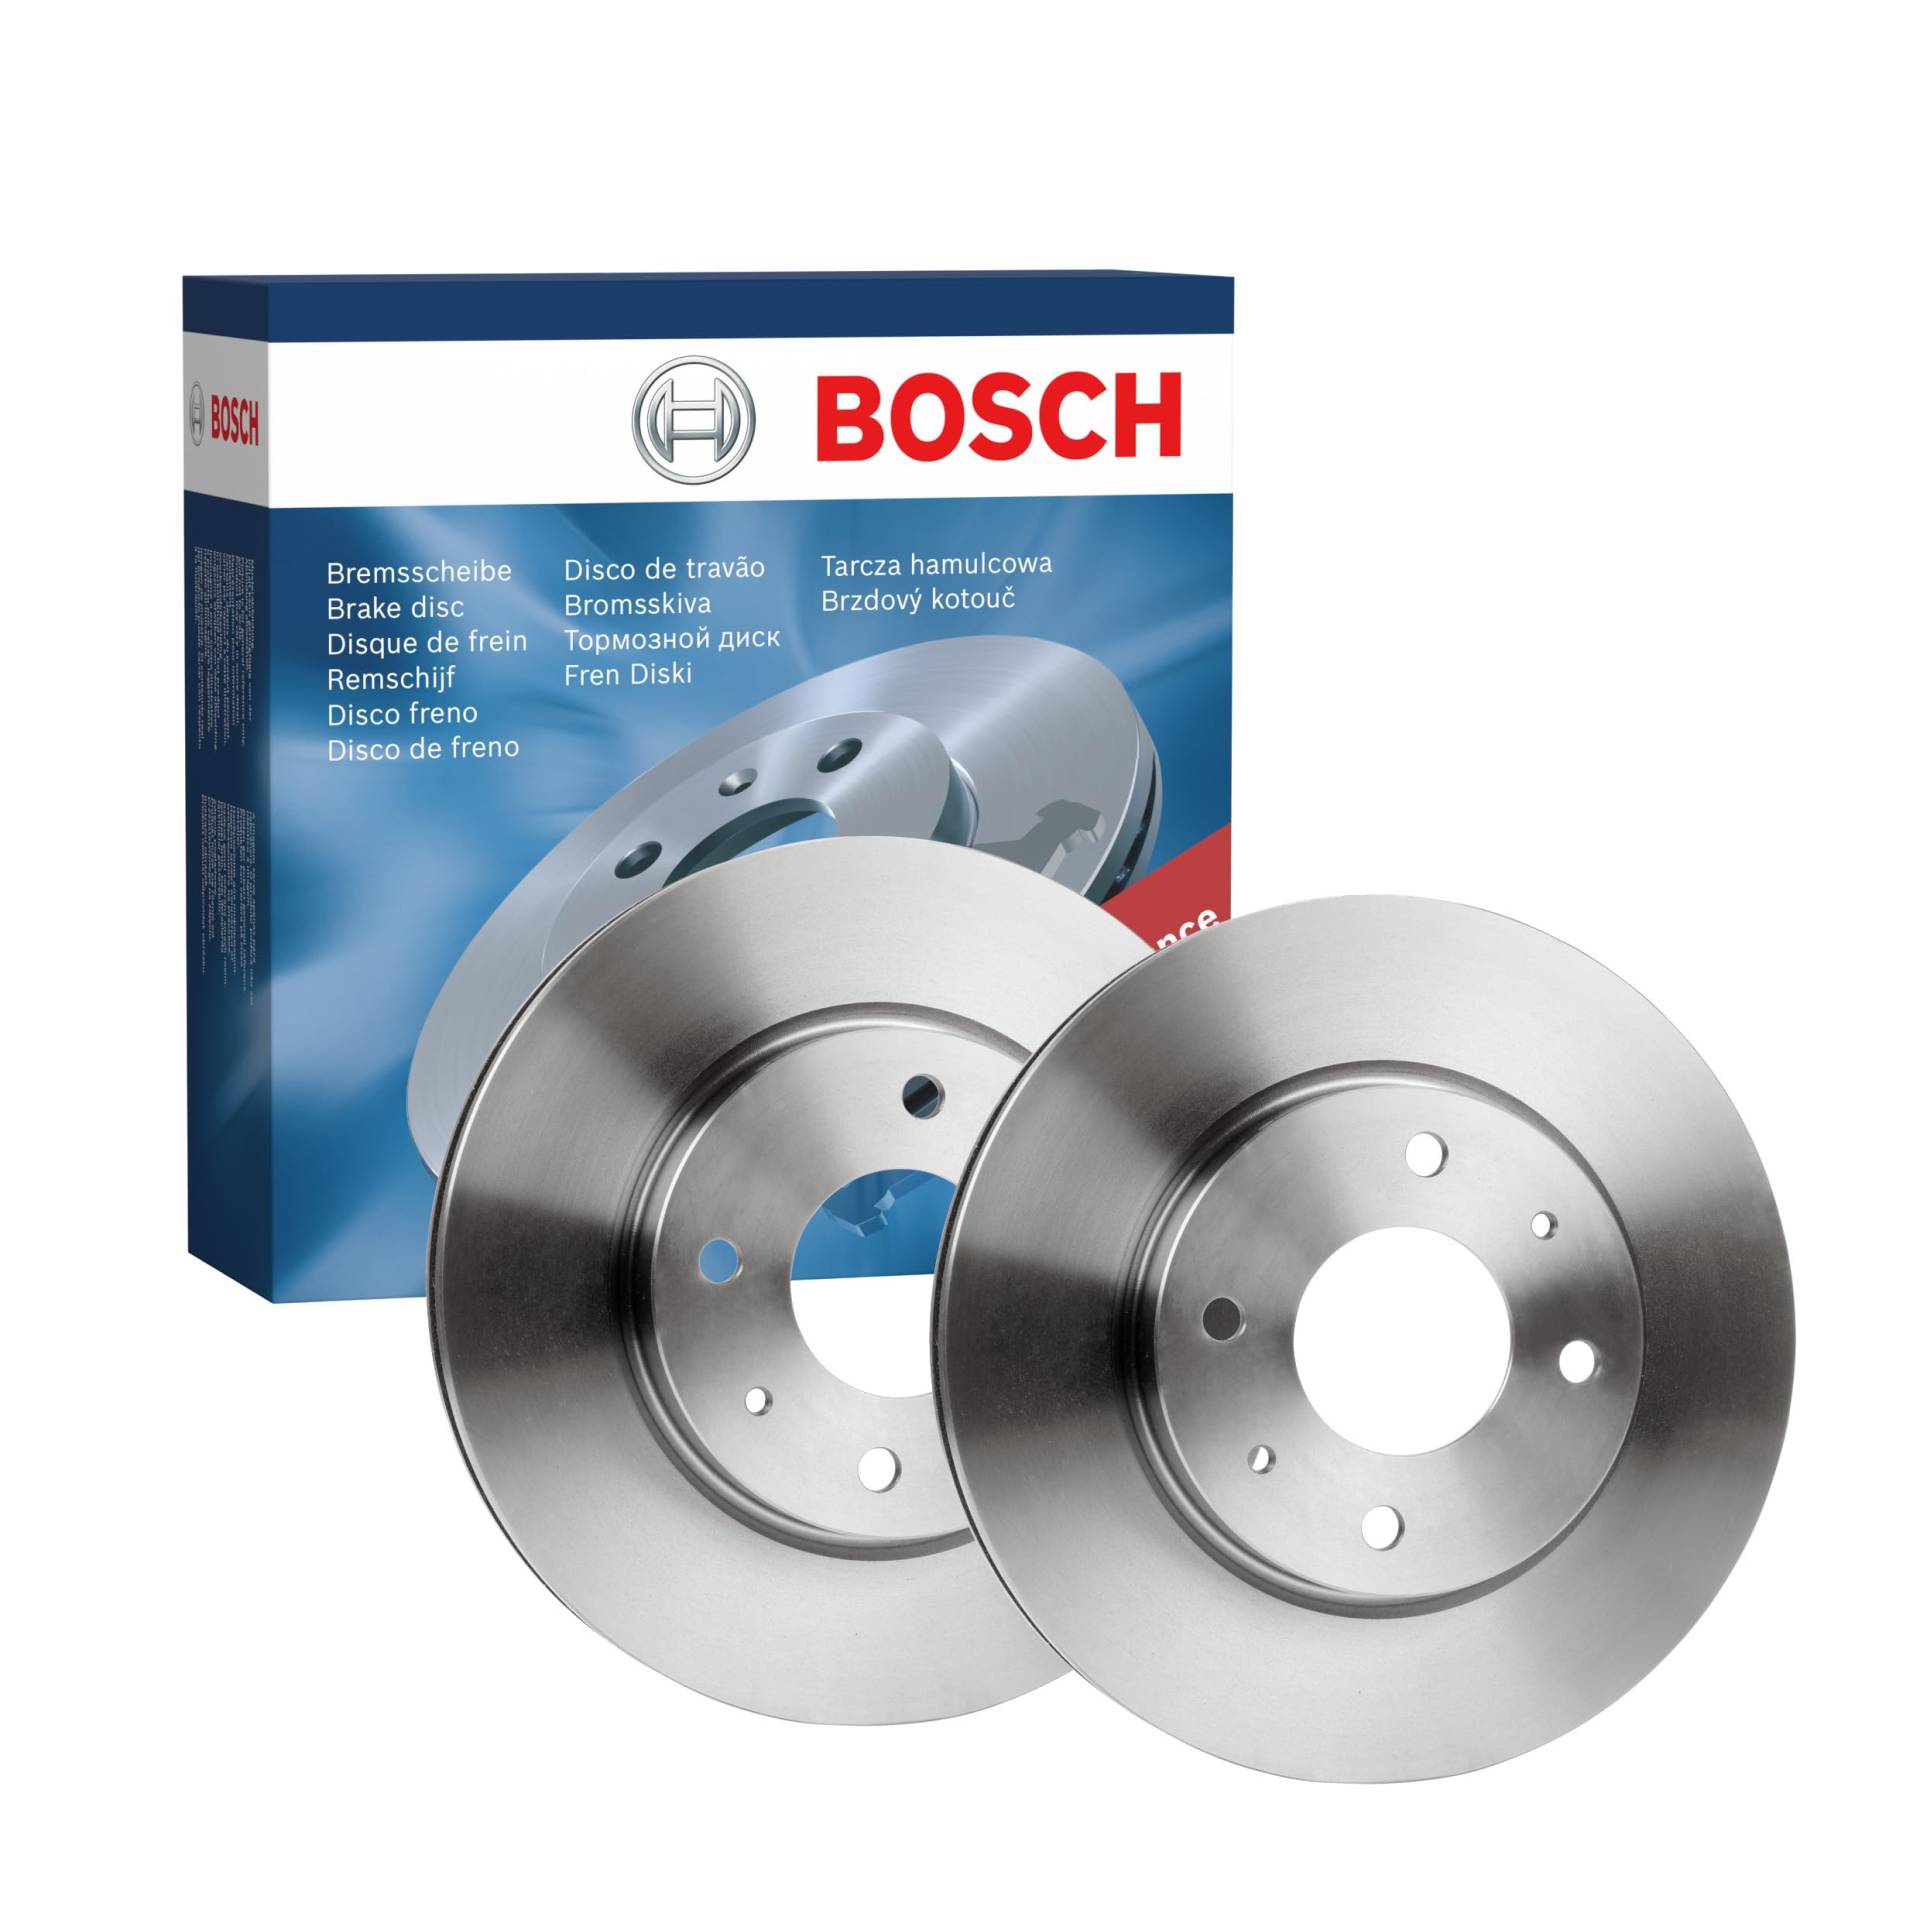 Bosch BD1890 Bremsscheiben - Vorderachse - ECE-R90 Zertifizierung - zwei Bremsscheiben pro Set von Bosch Automotive